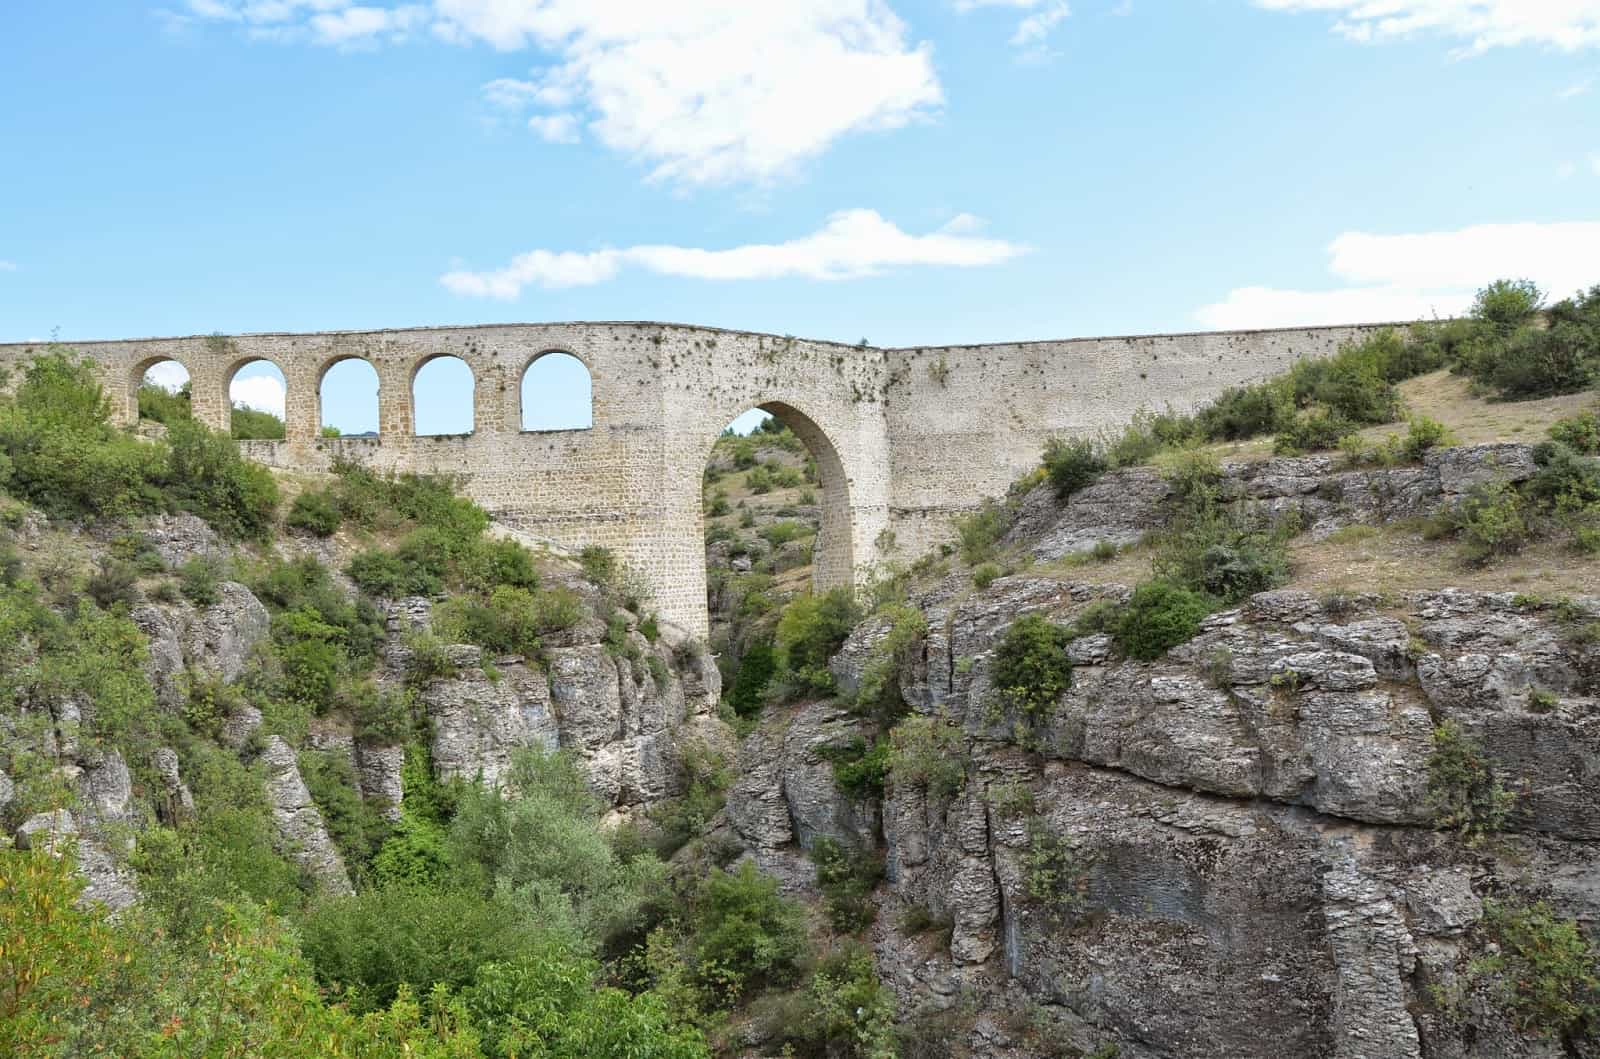 İncekaya Aqueduct in Turkey